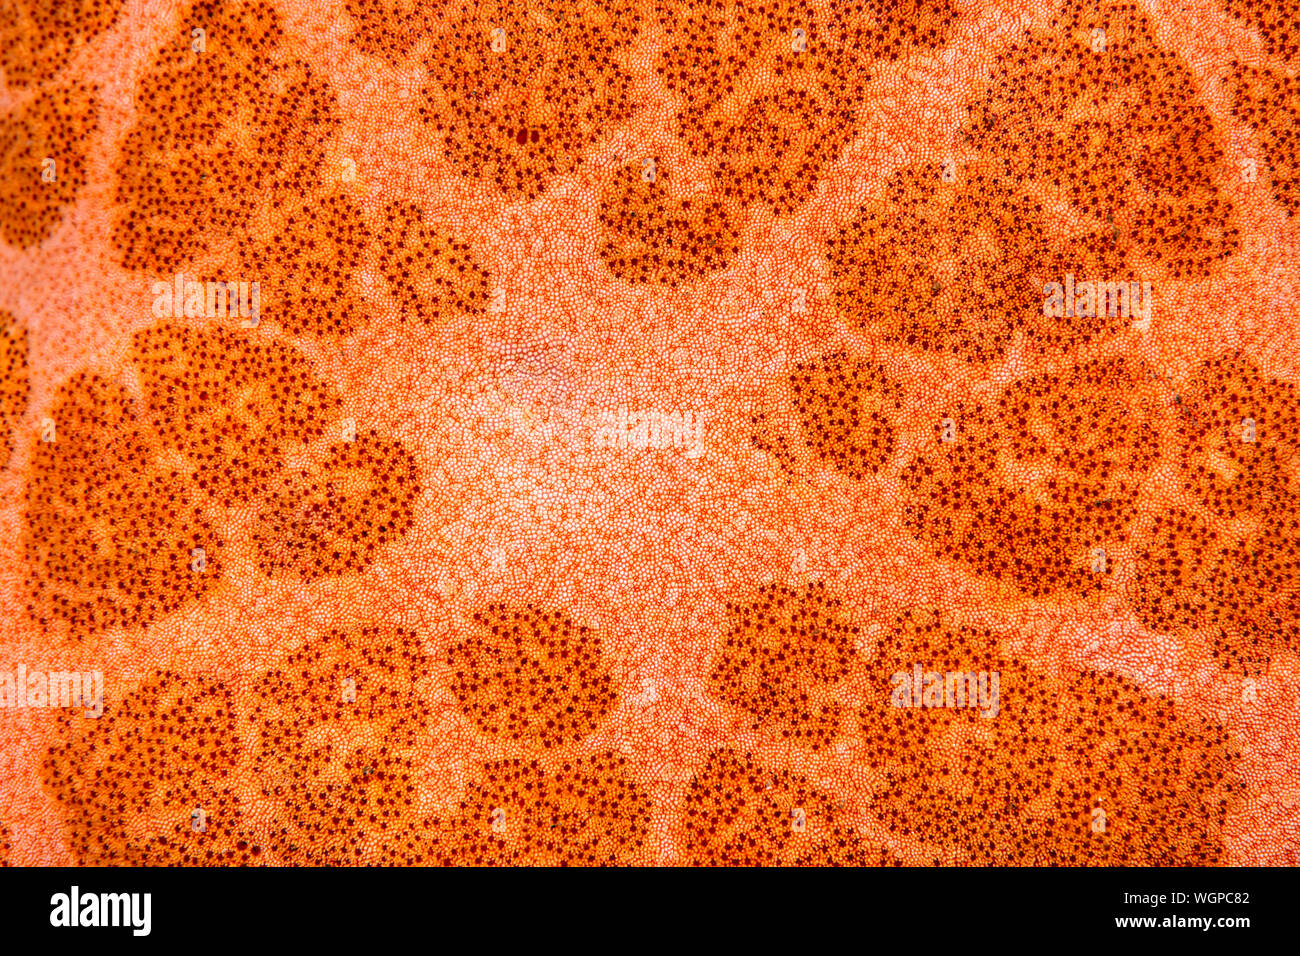 Super Makro Bild eines Seesterns Körper zeigt die kleinste Details und Muster der Stachelhäuter. Stockfoto